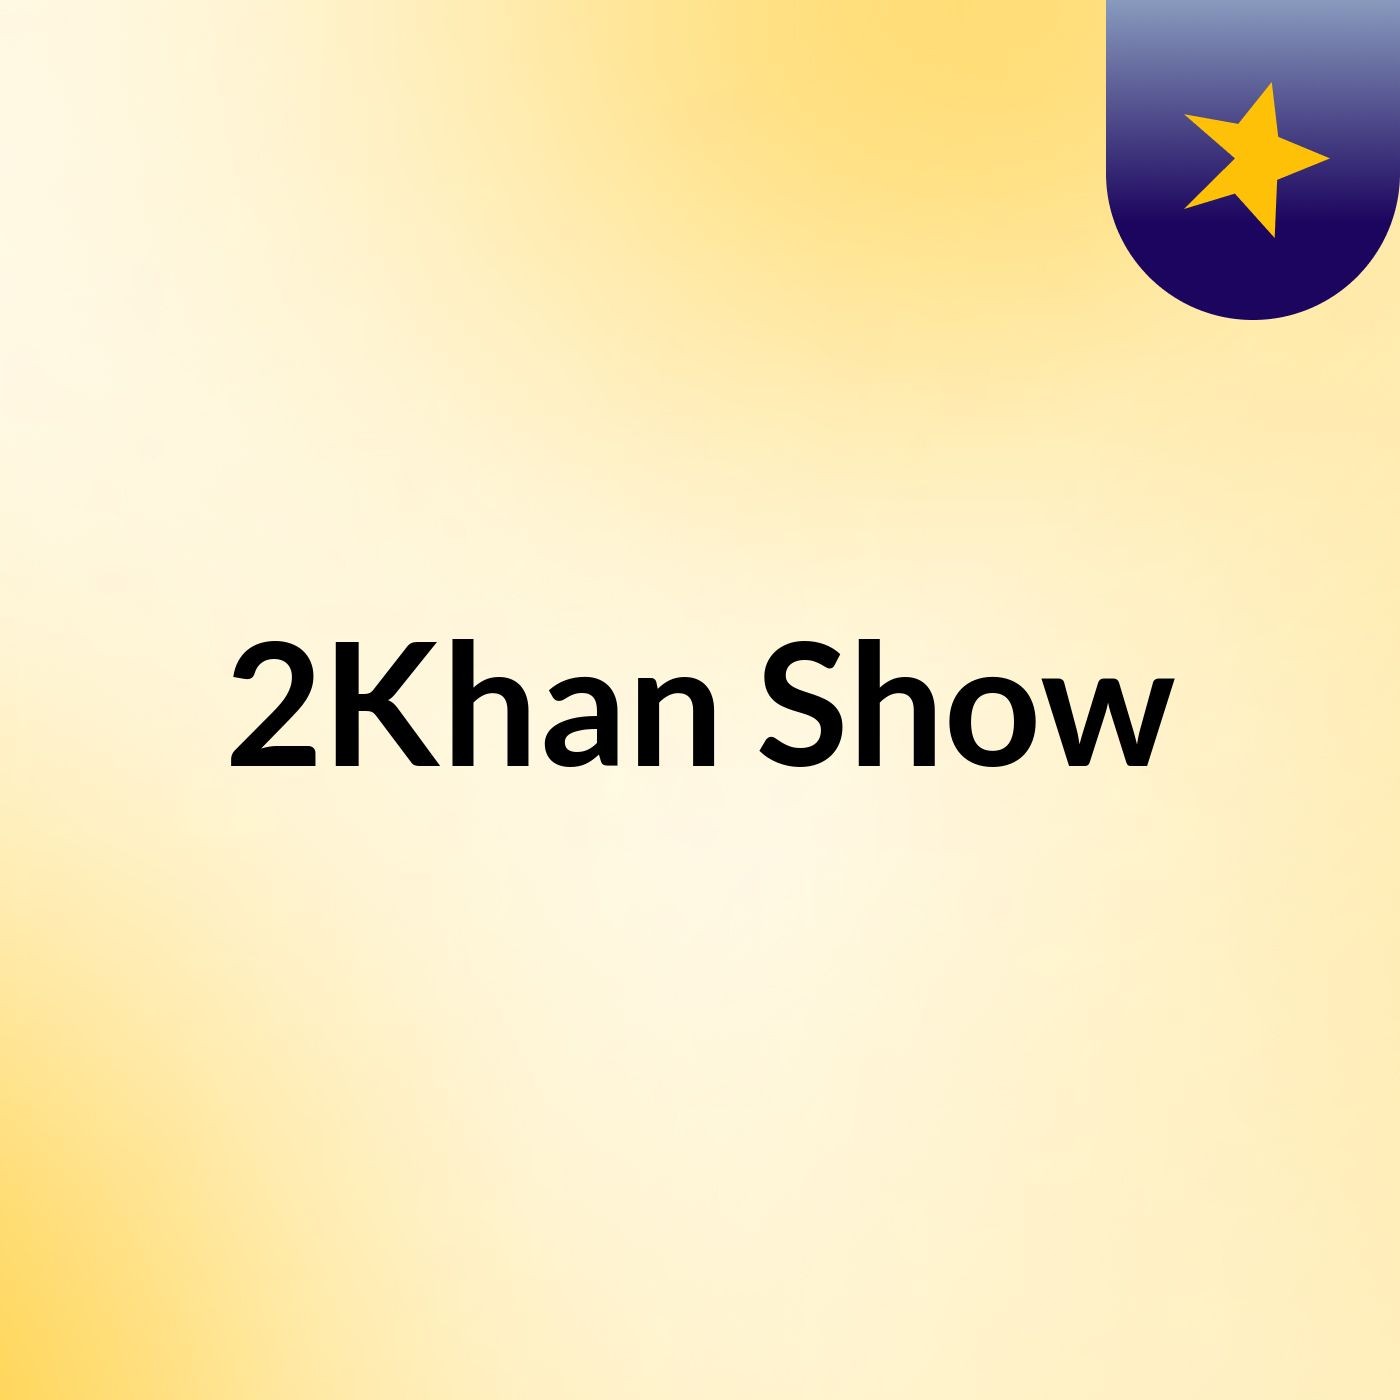 2Khan Show